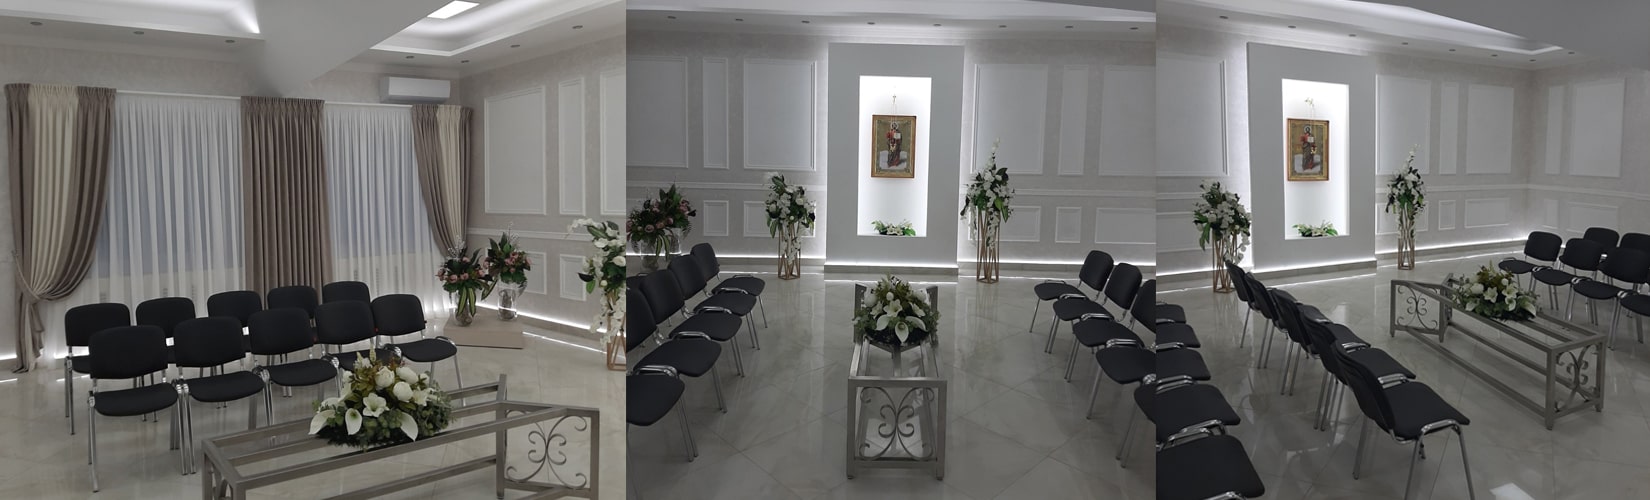 Ритуальный зал траурный в Бресте